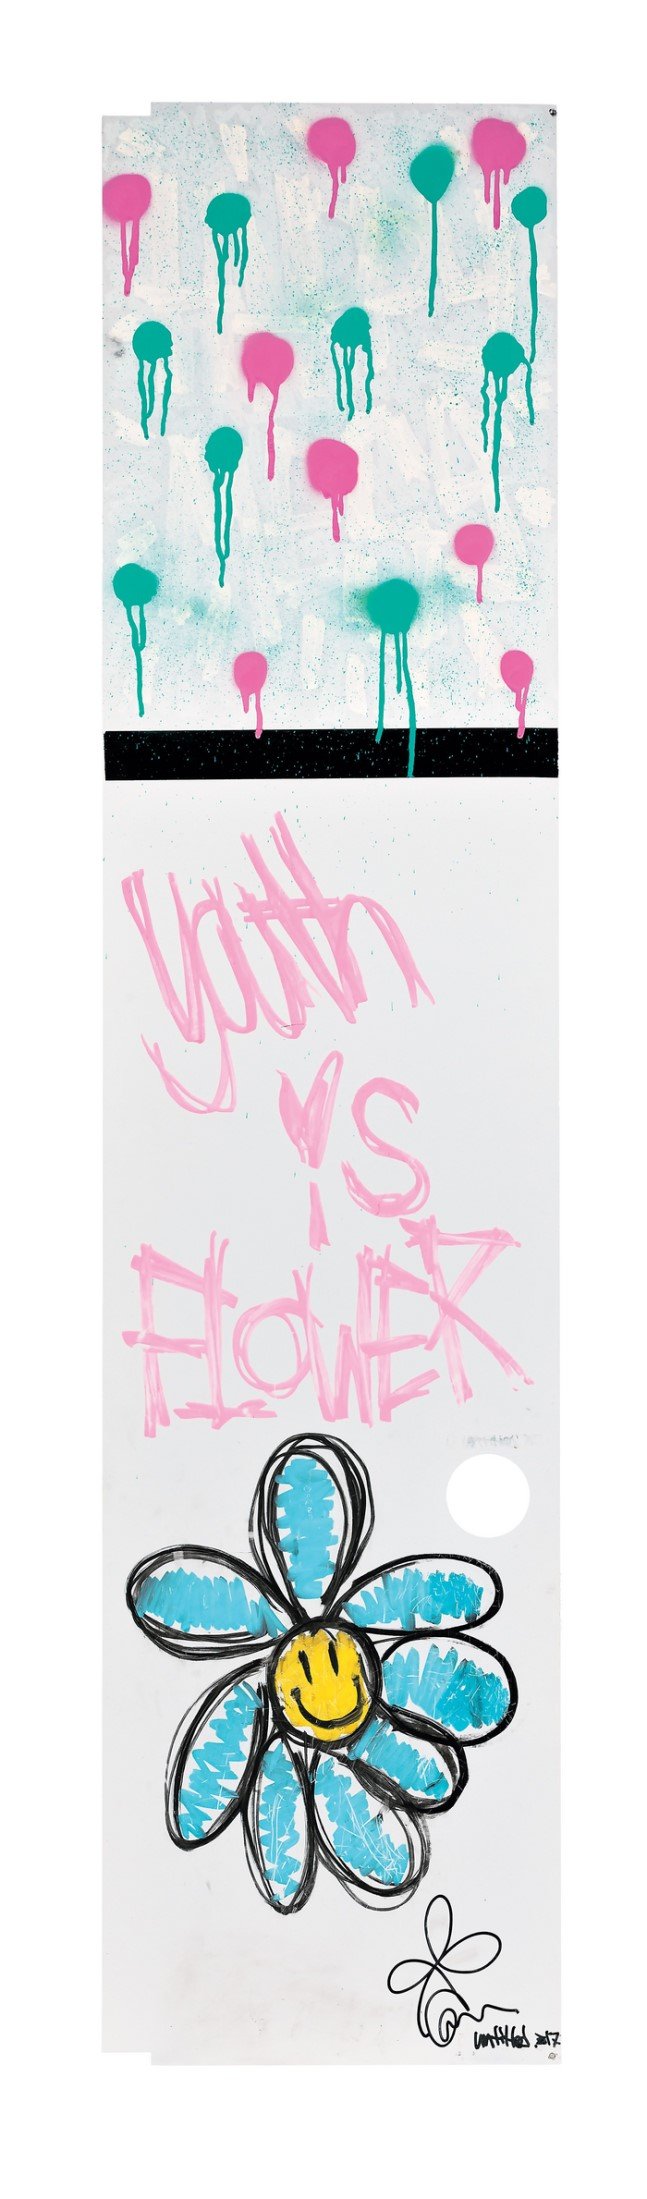 권지용(G-DRAGON)의 ‘Youth is Flower’ / 사진=뉴시스